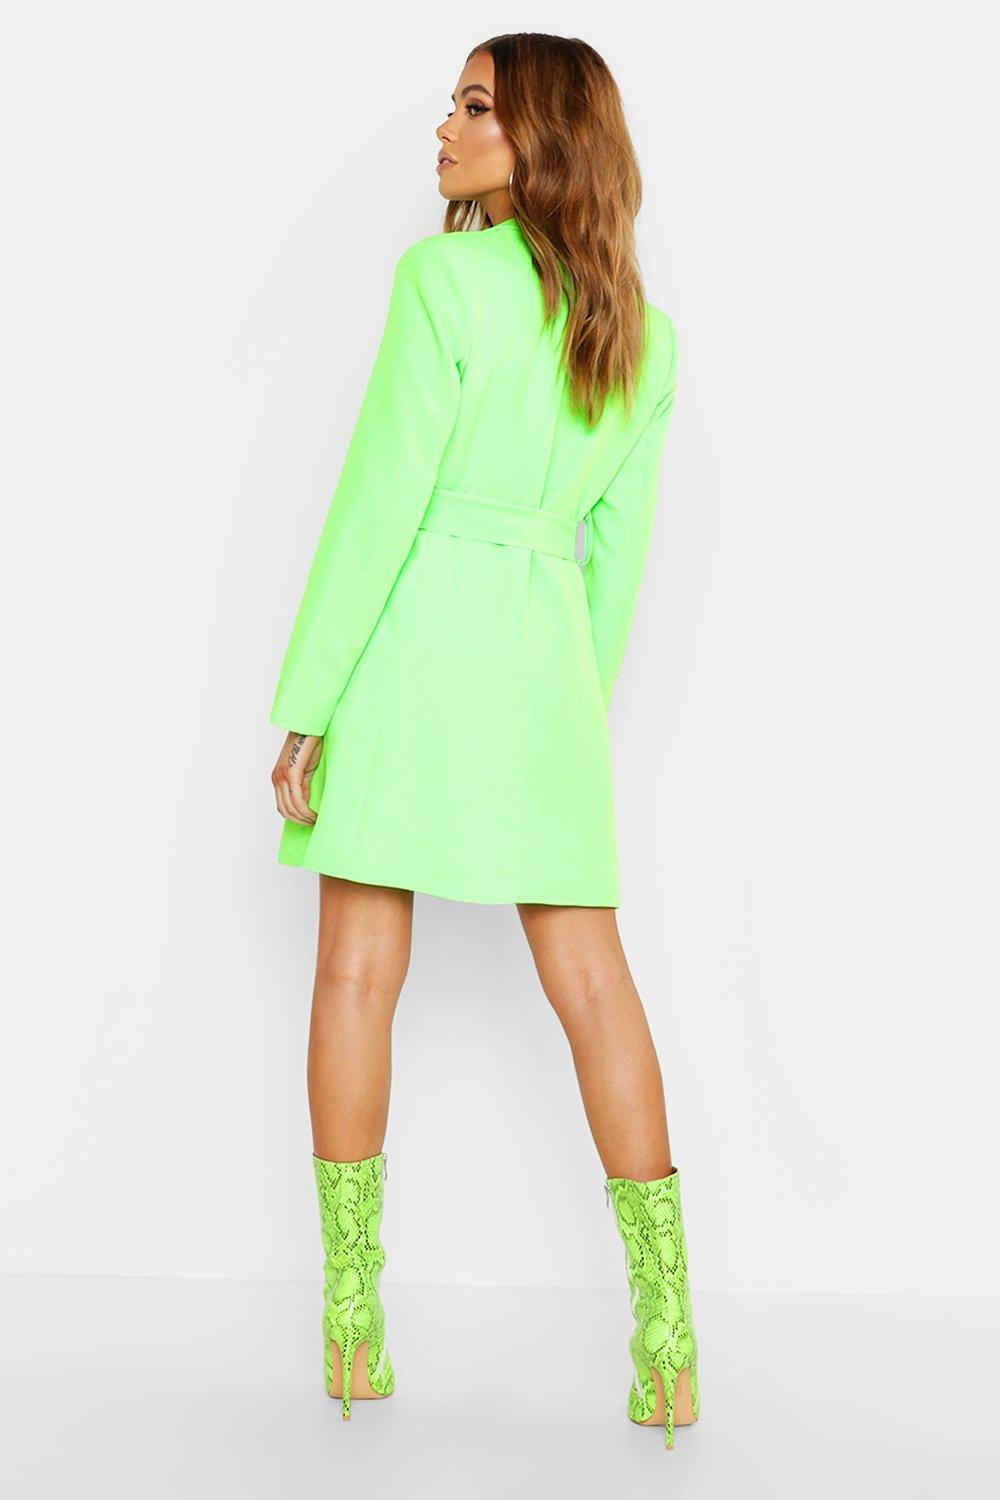 boohoo neon dress